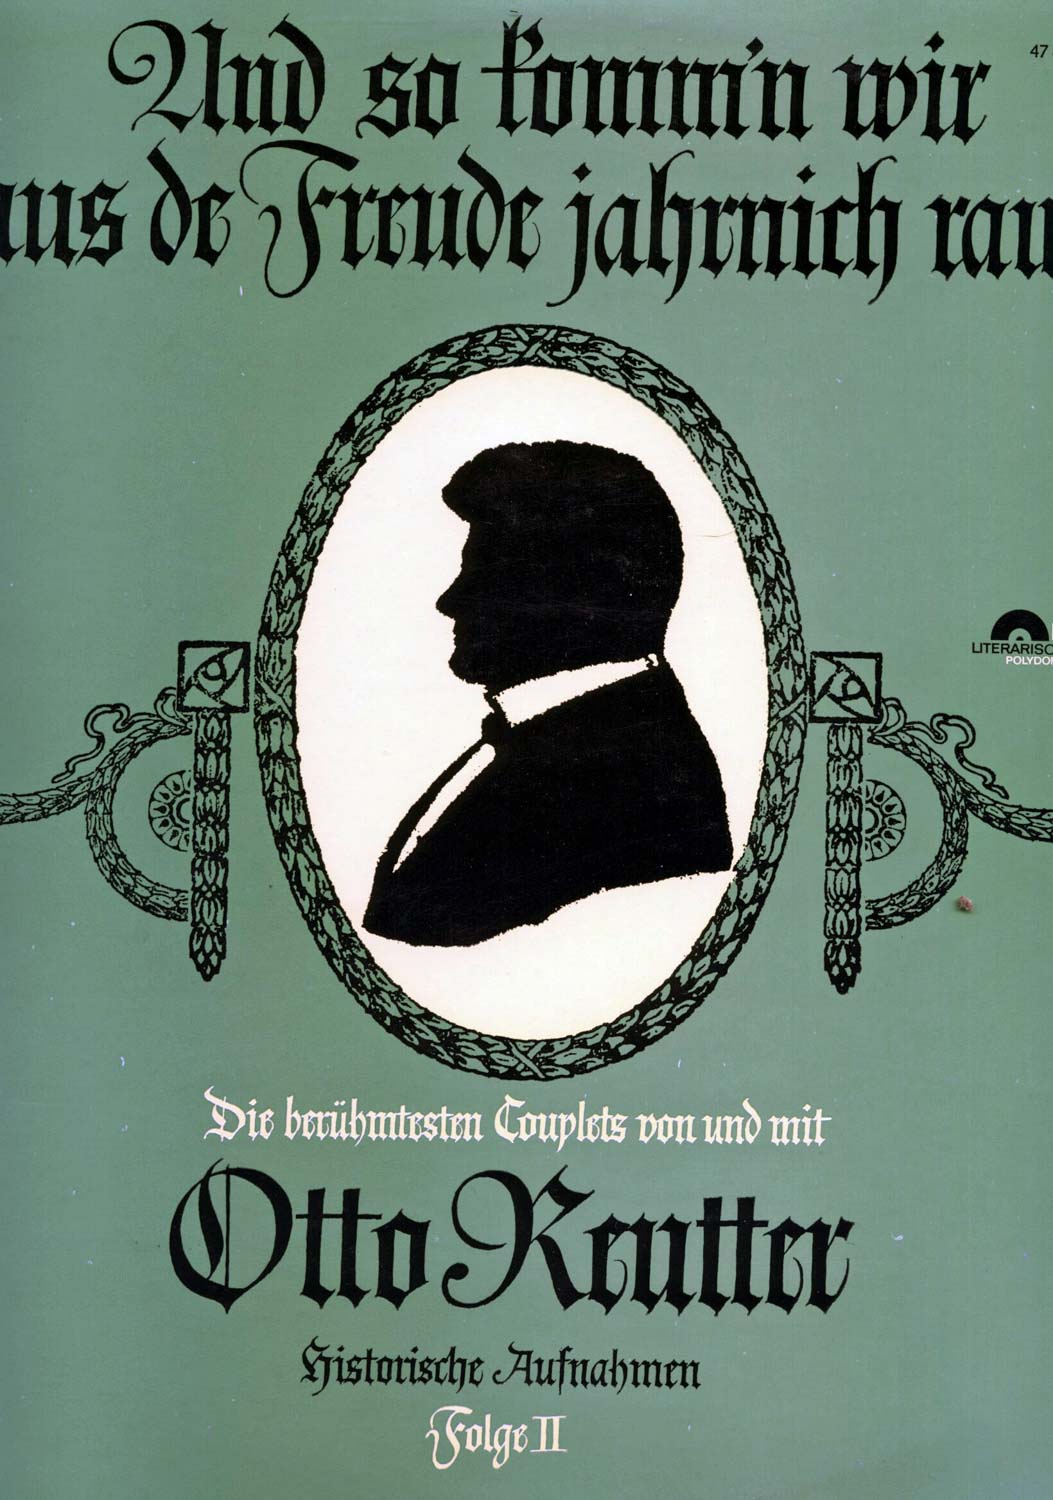 Otto Reutter  Und so komm'n wir aus de Freude jahrnich raus. Die berühmtesten Couplets. Historische Aufnahmen, Folge II  *LP 12'' (Vinyl)*. 